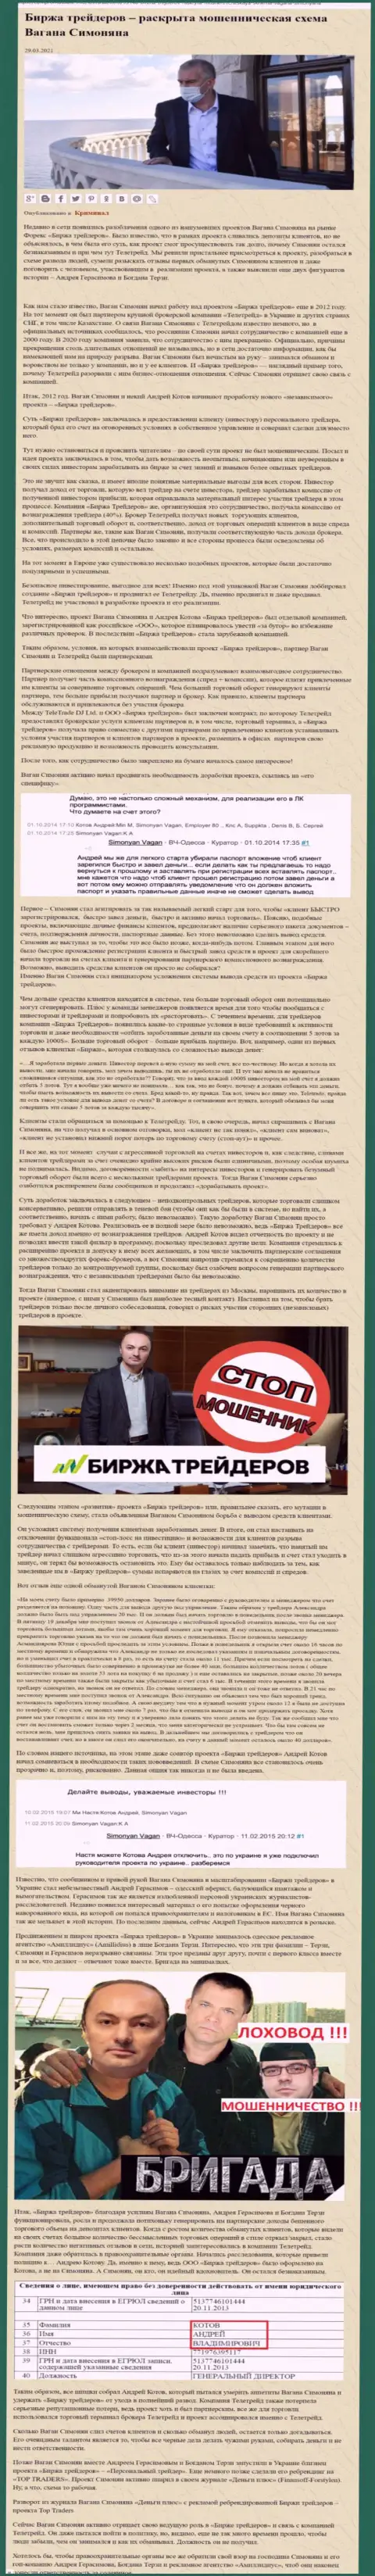 Продвижением организации B-Traders, связанной с обманщиками TeleTrade Org, тоже был занят Терзи Богдан